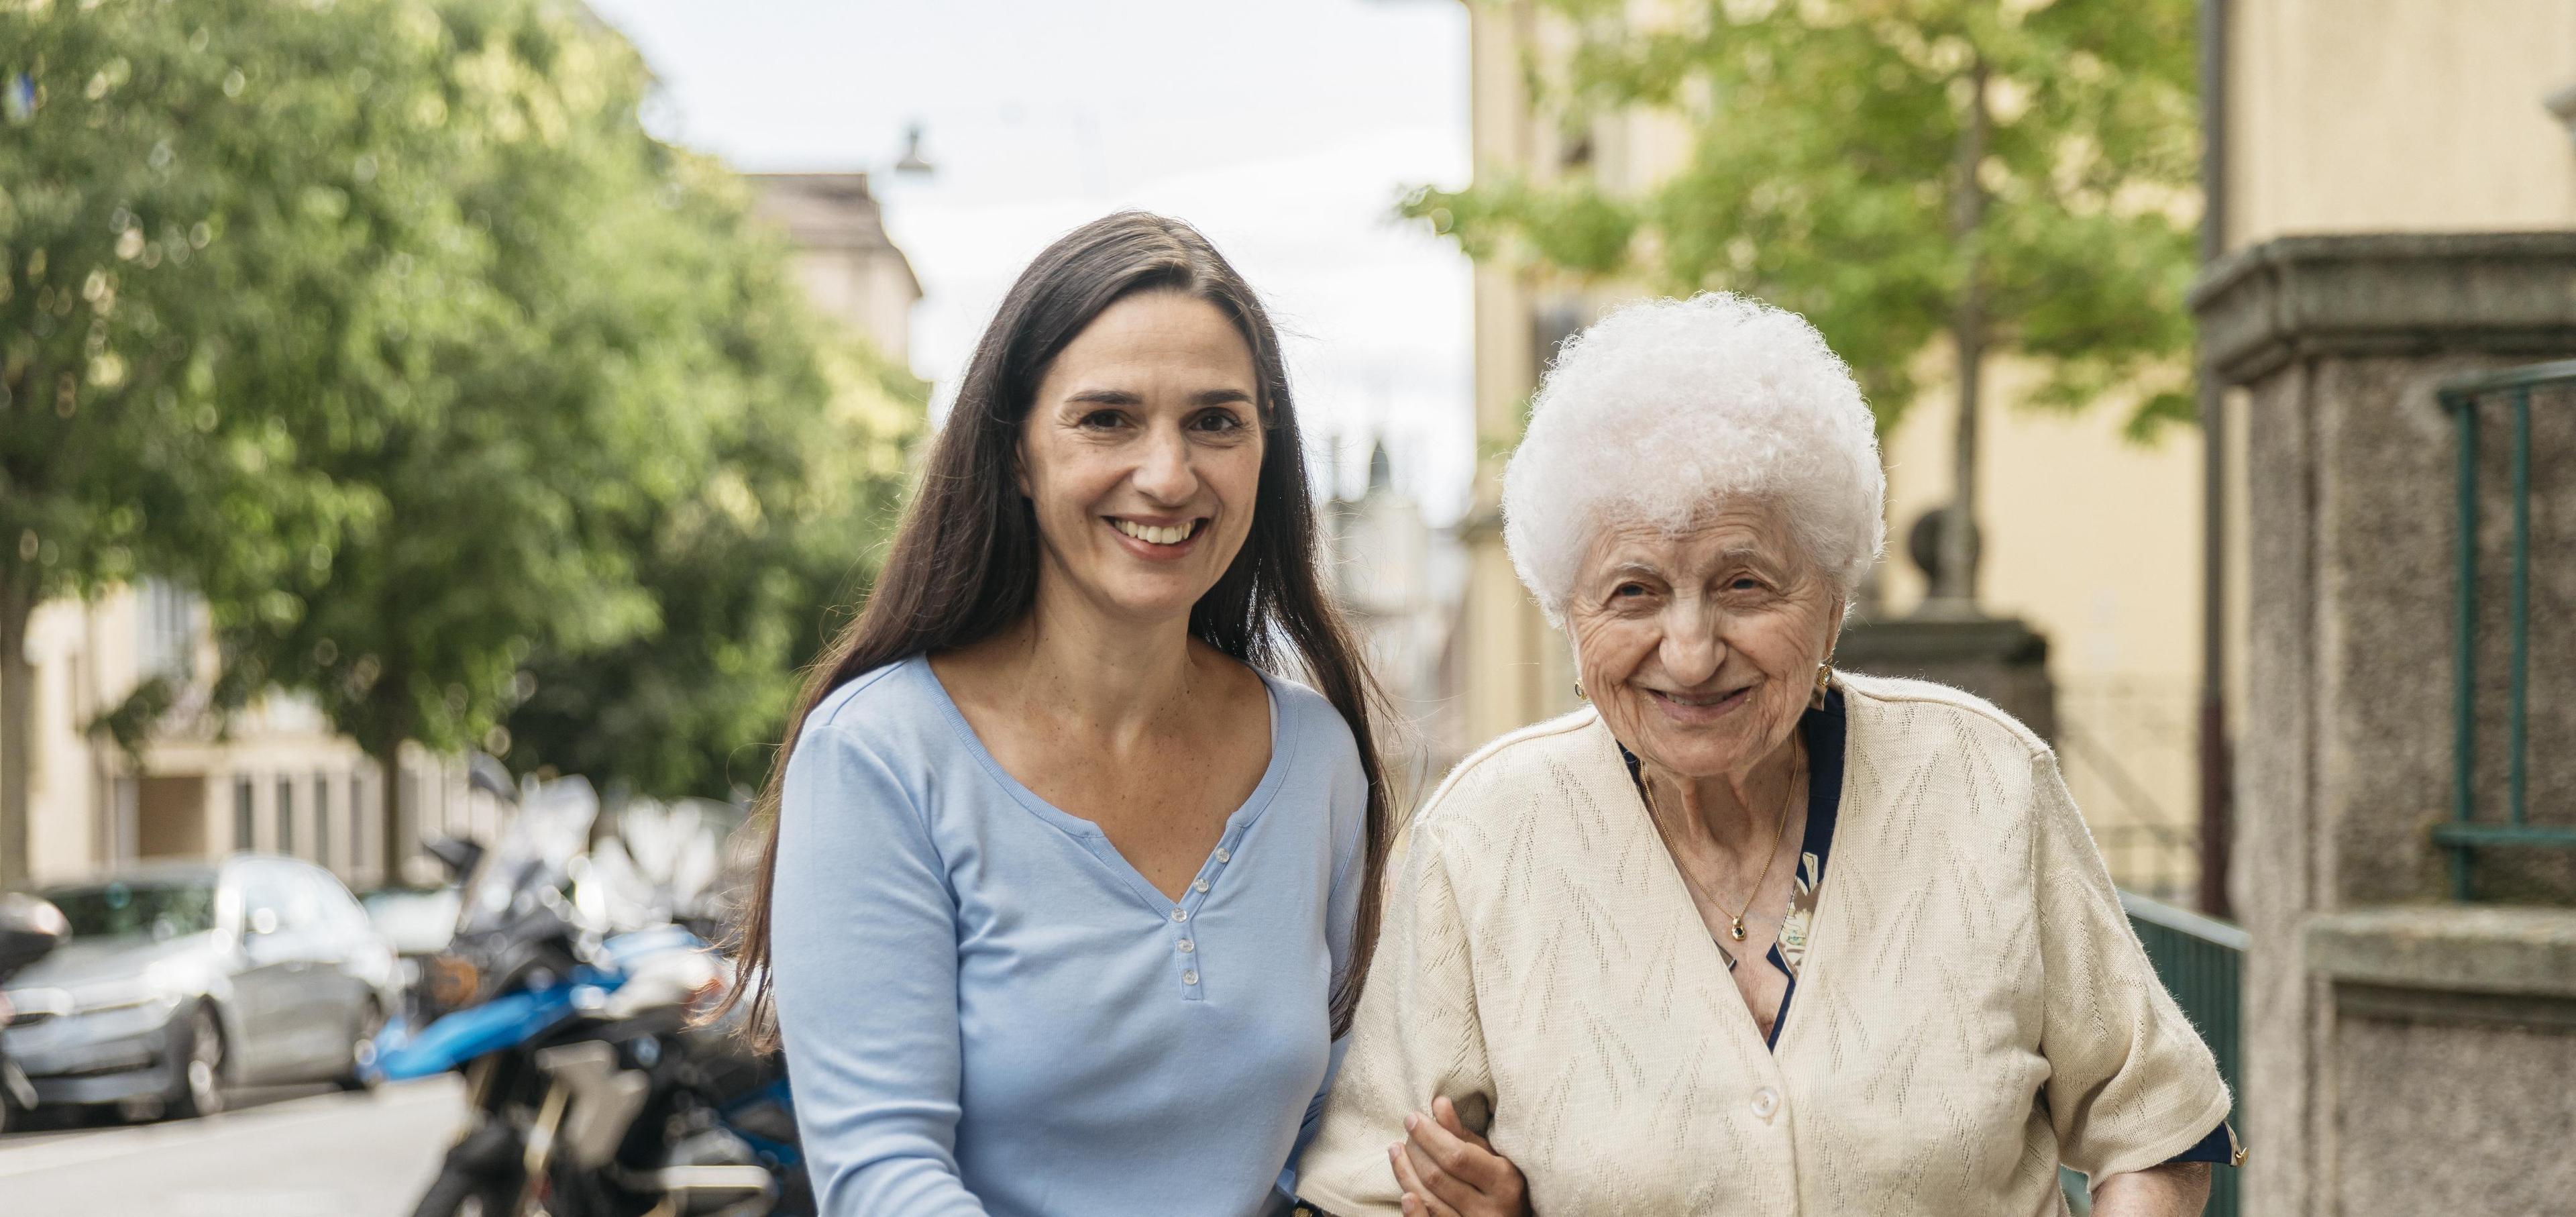 Une jeune femme bras dessus bras dessous avec une dame âgée en train de se promener.